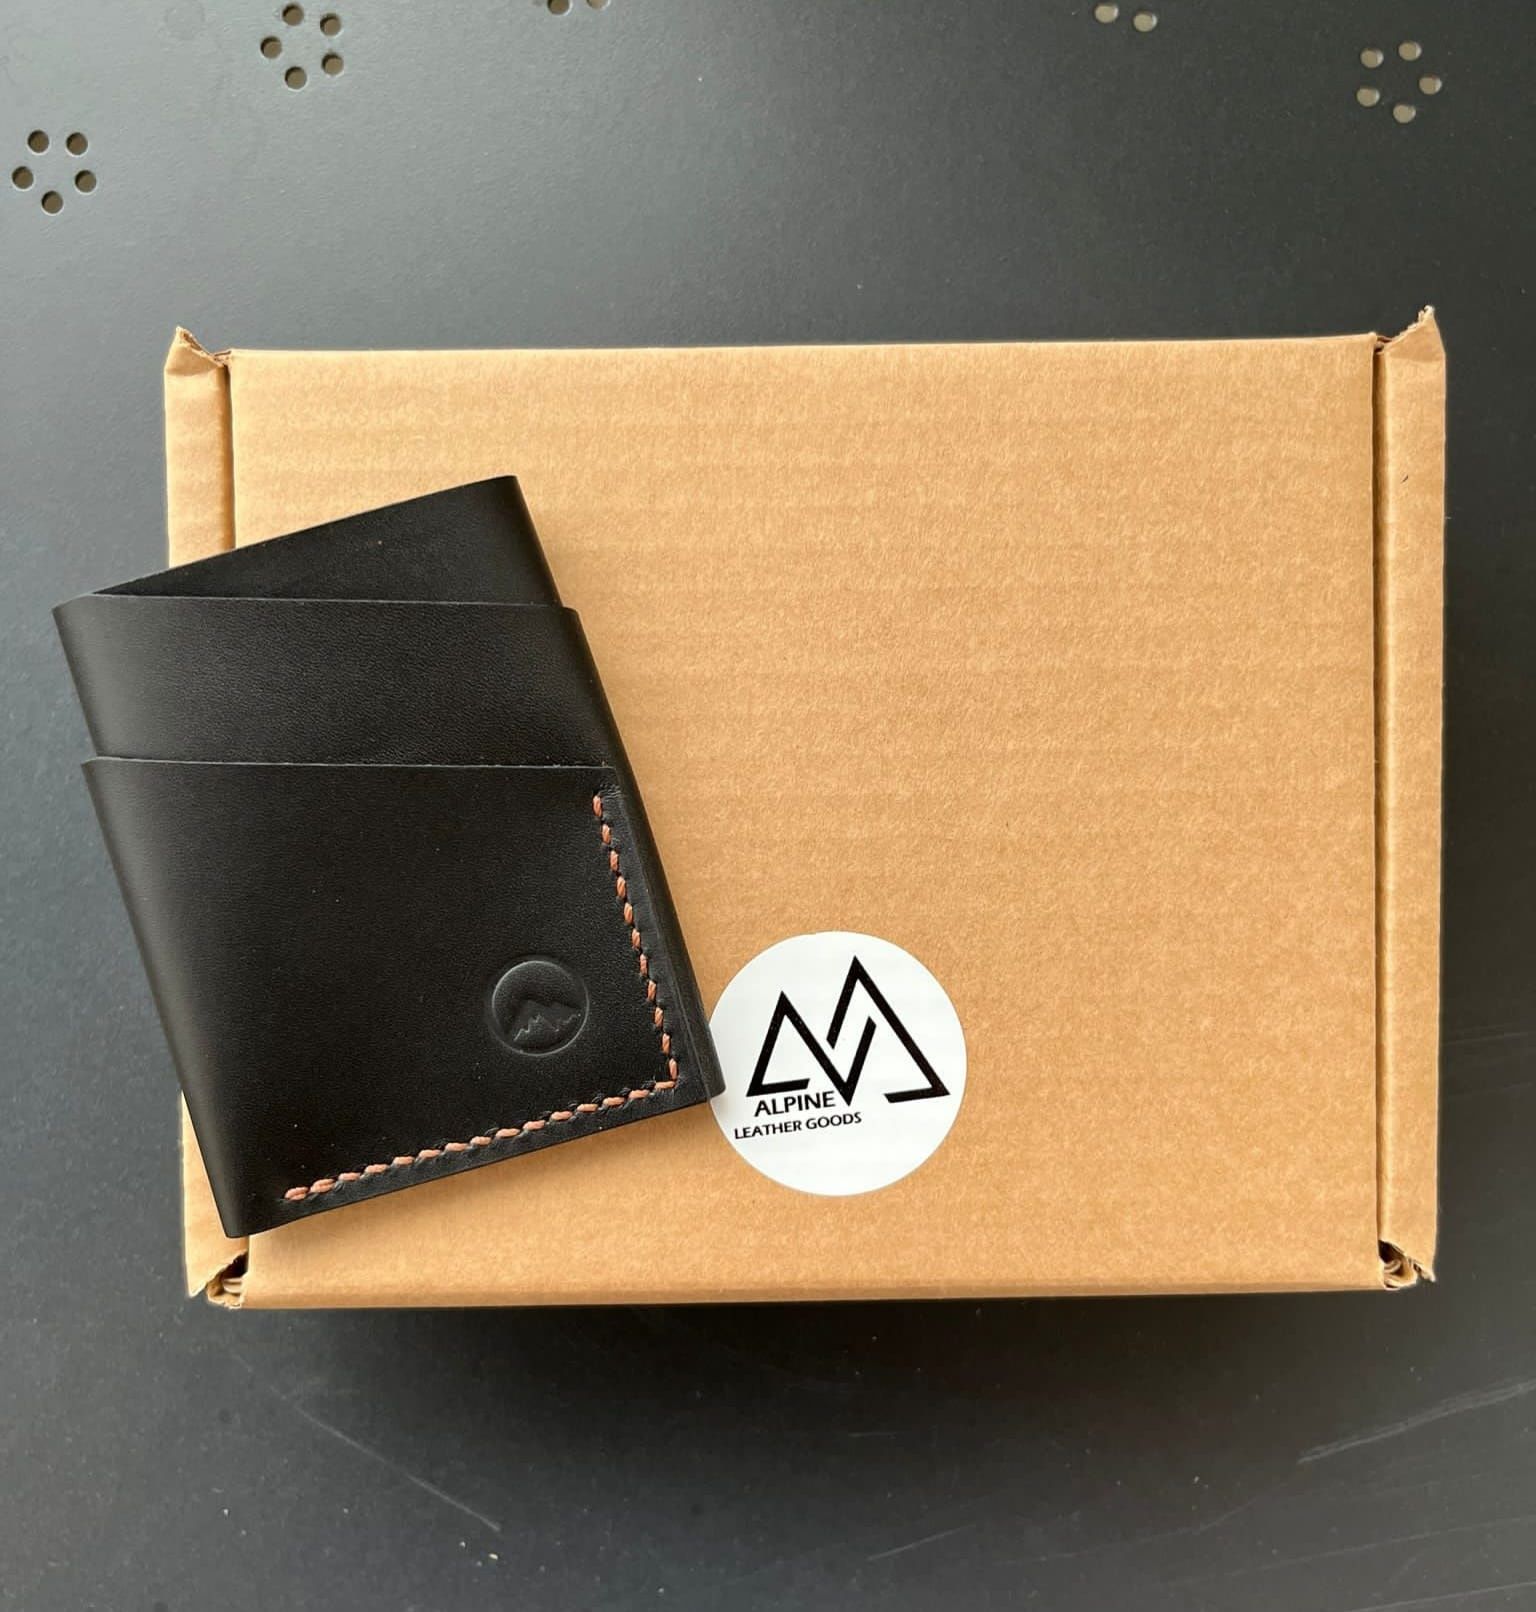 Portofel Alpine pentru carduri din piele naturala handmade 100%